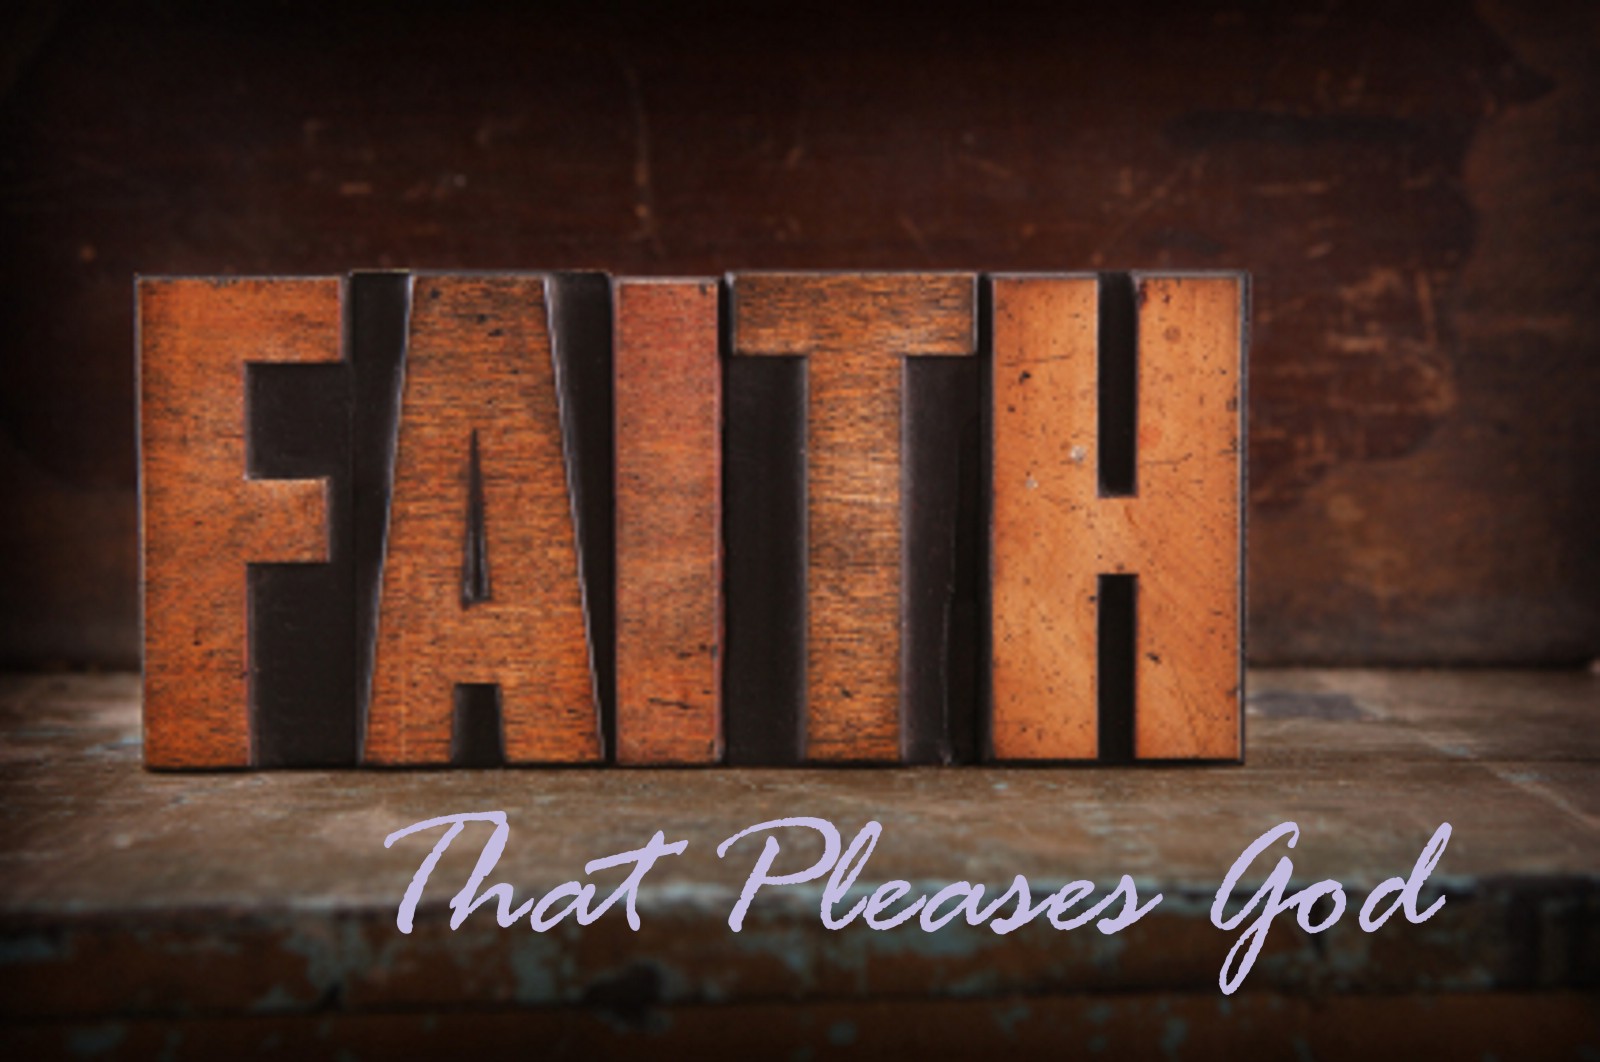 weak-faith-in-god